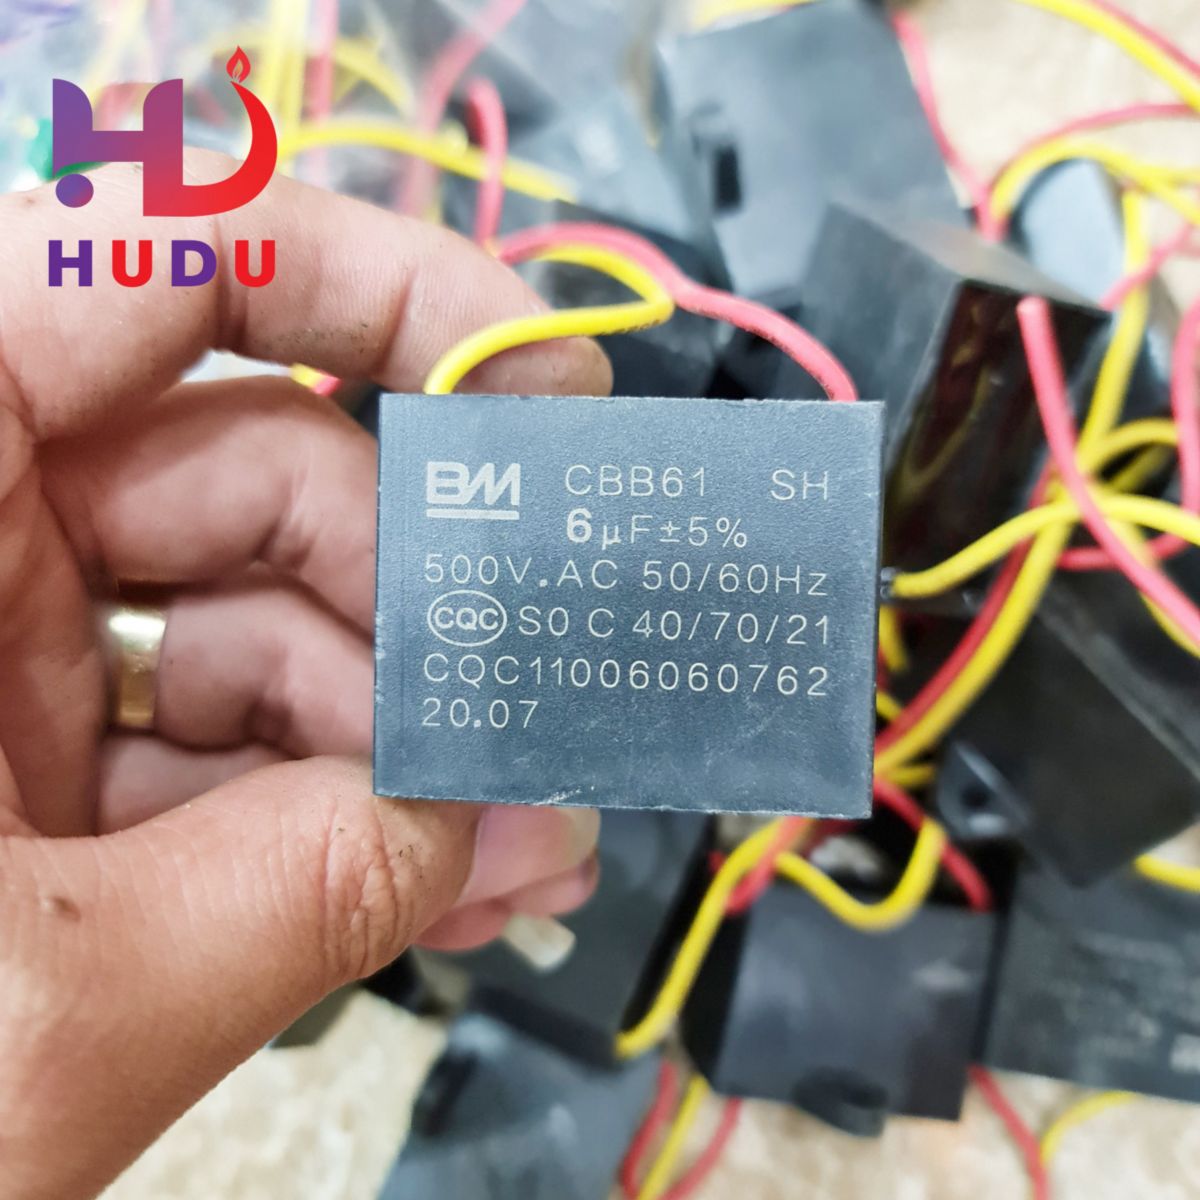 Linh kiện điện tử Hudu cung cấp tụ BM dây 6µF - 500V đảm bảo chất lượng tốt